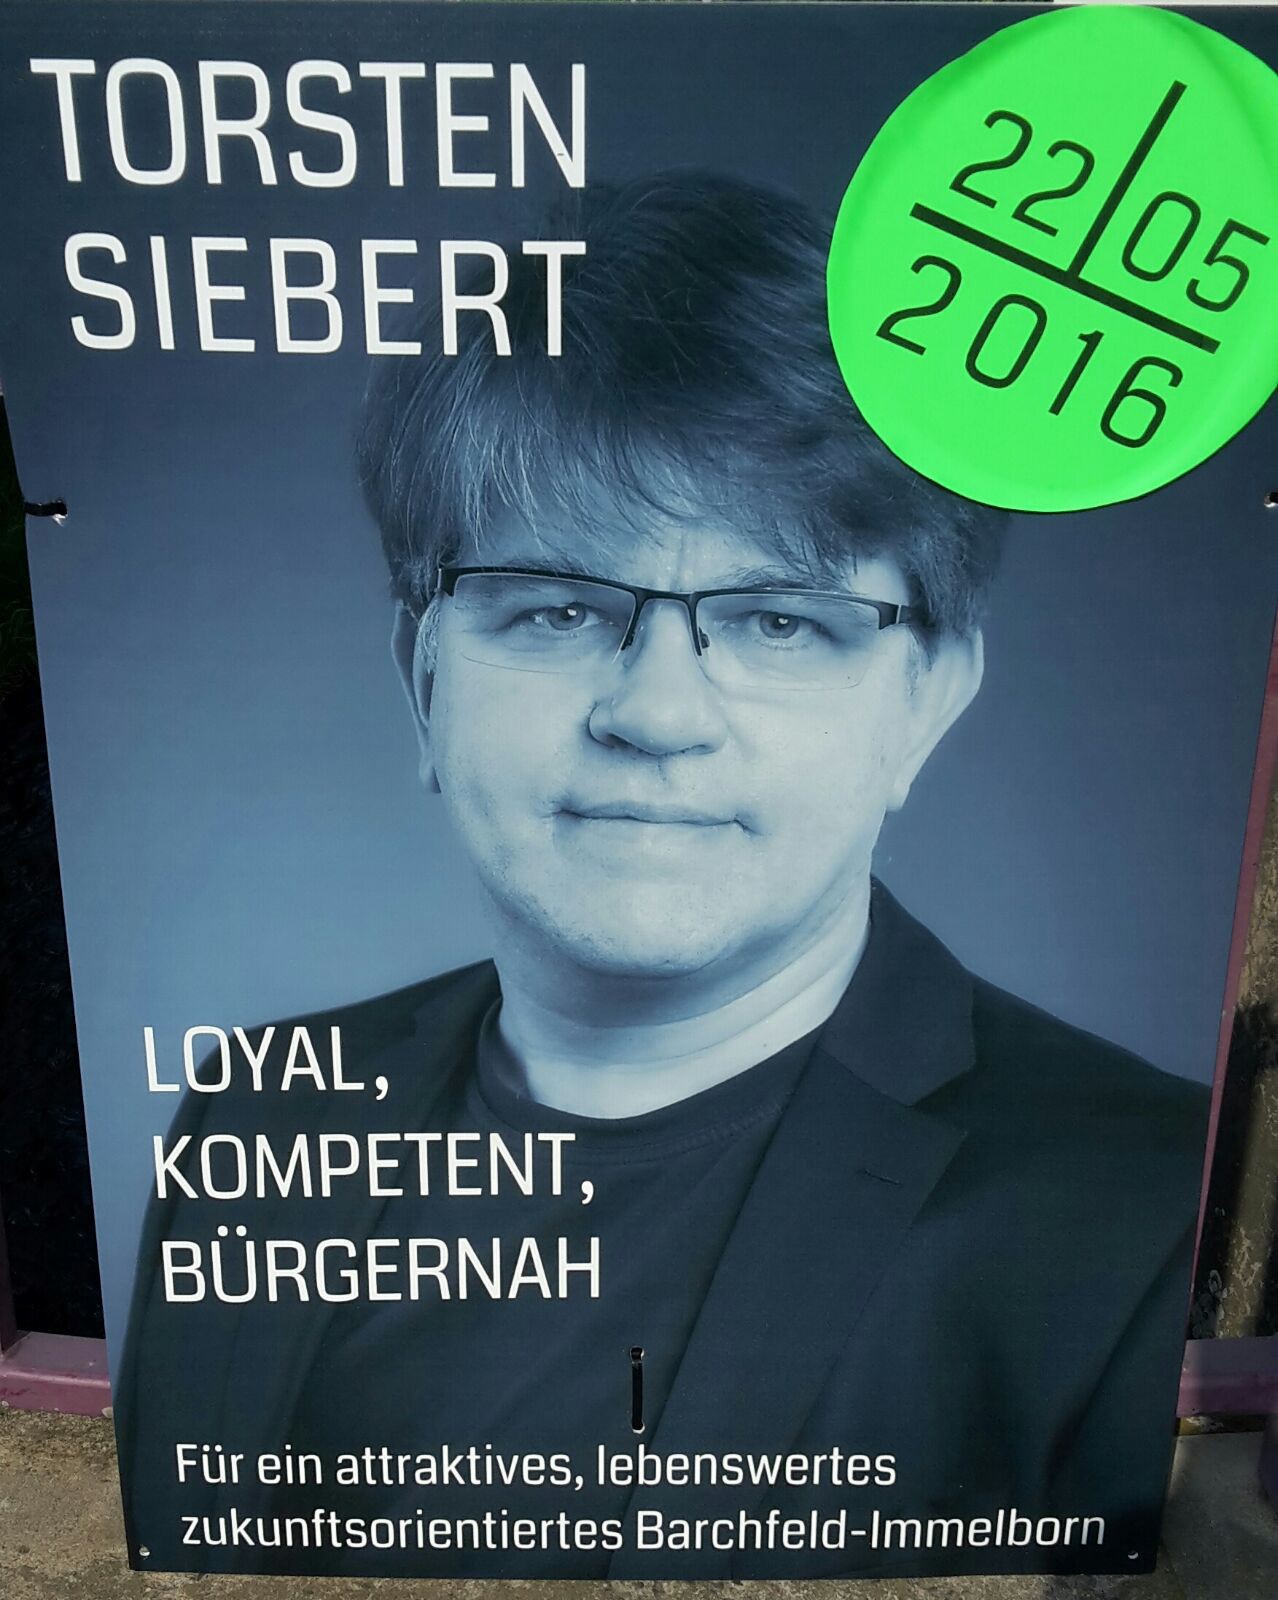 In die Stichwahl am 5. Juni: Torsten Siebert